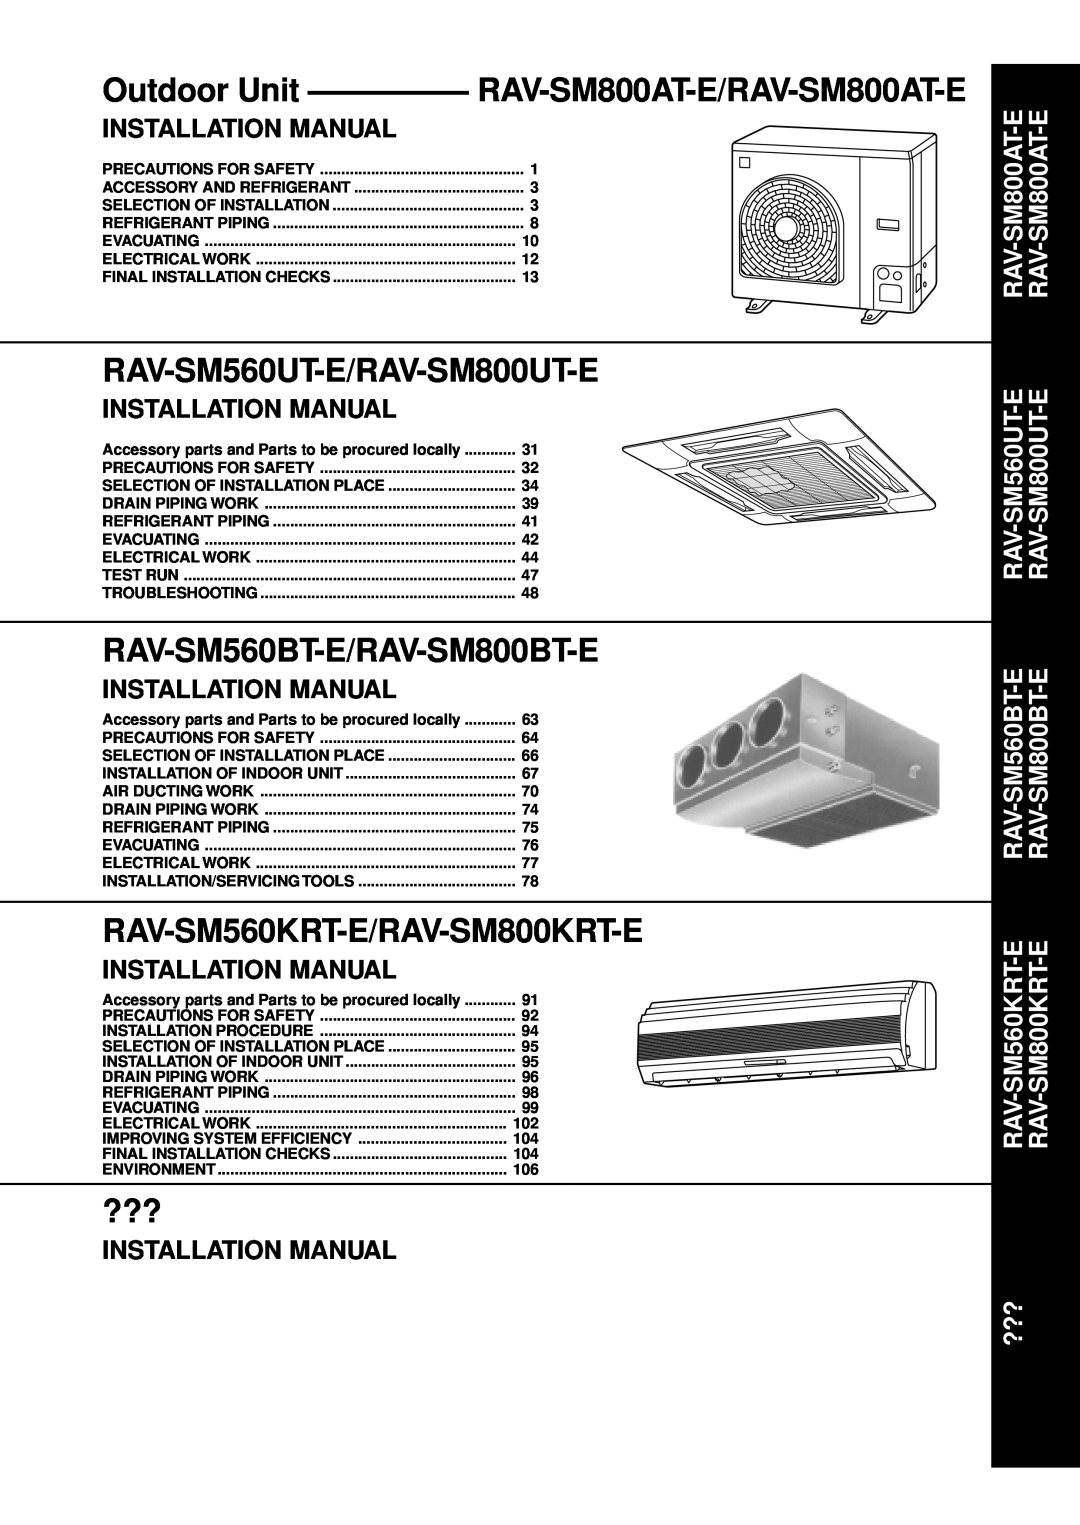 Toshiba RAM-SM560UT-E RAV-SM560UT-E/RAV-SM800UT-E, RAV-SM560BT-E/RAV-SM800BT-E, RAV-SM560KRT-E/RAV-SM800KRT-E 